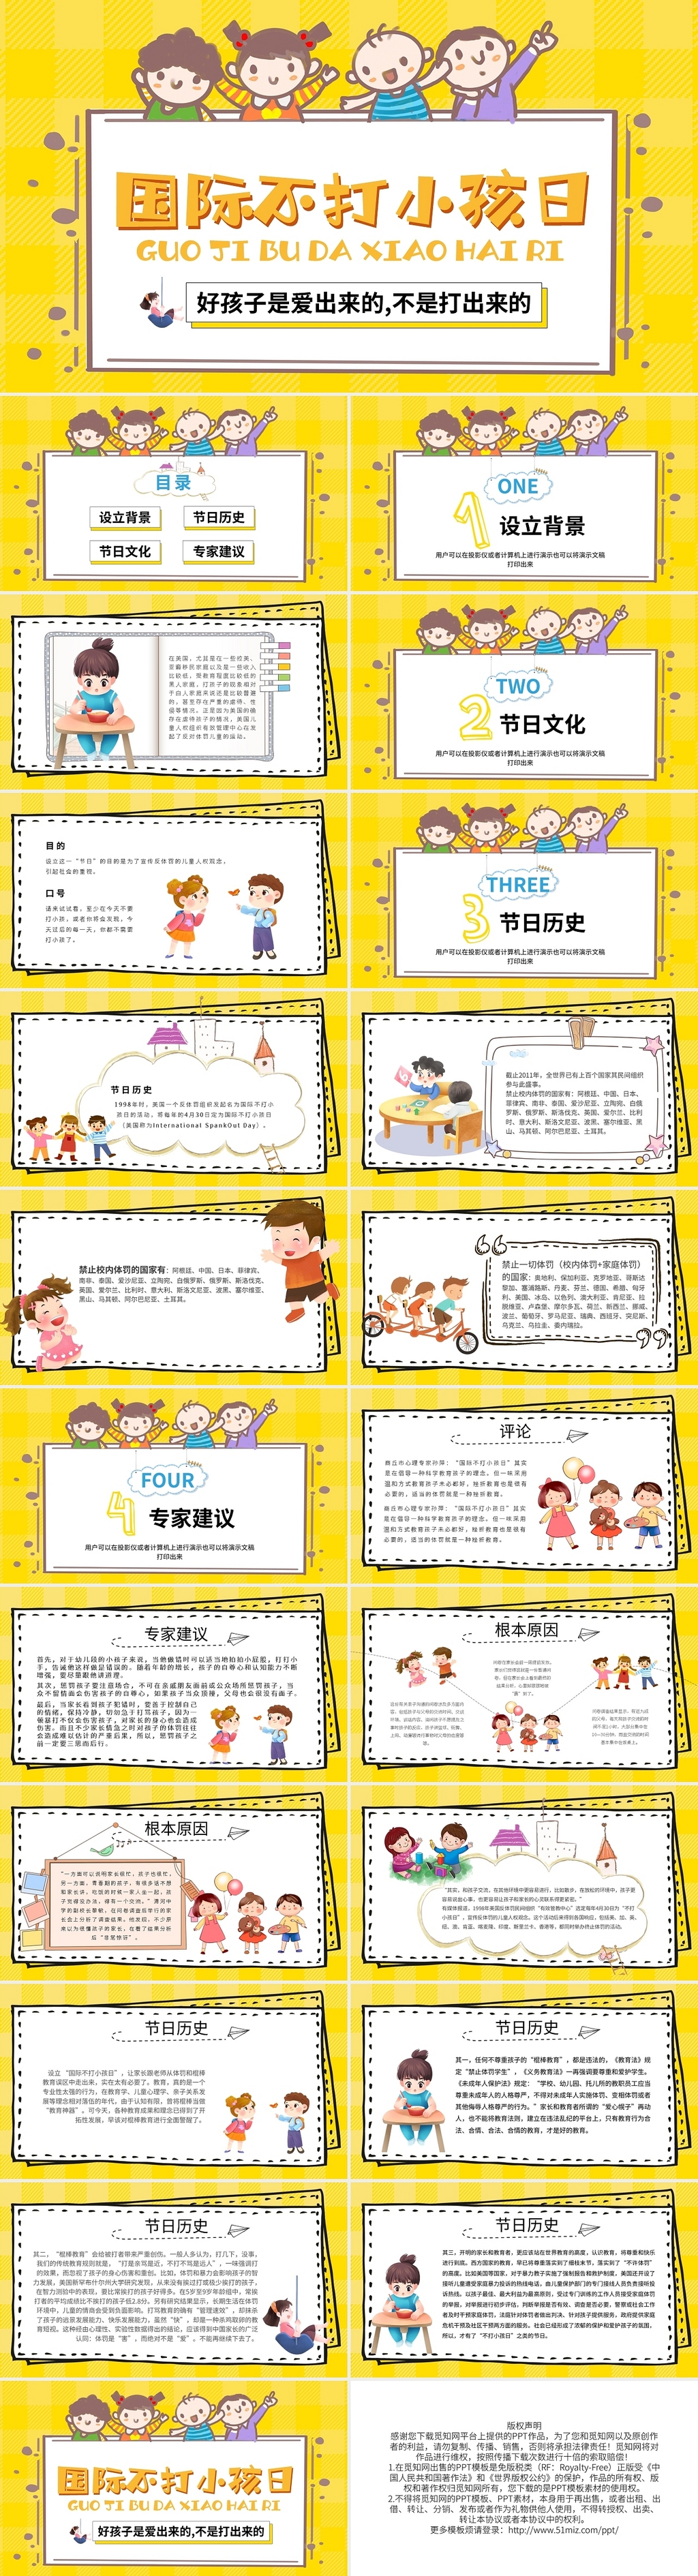 黄色卡通国际不打小孩日PPT模板宣传PPT动态PPT世界不打小孩日